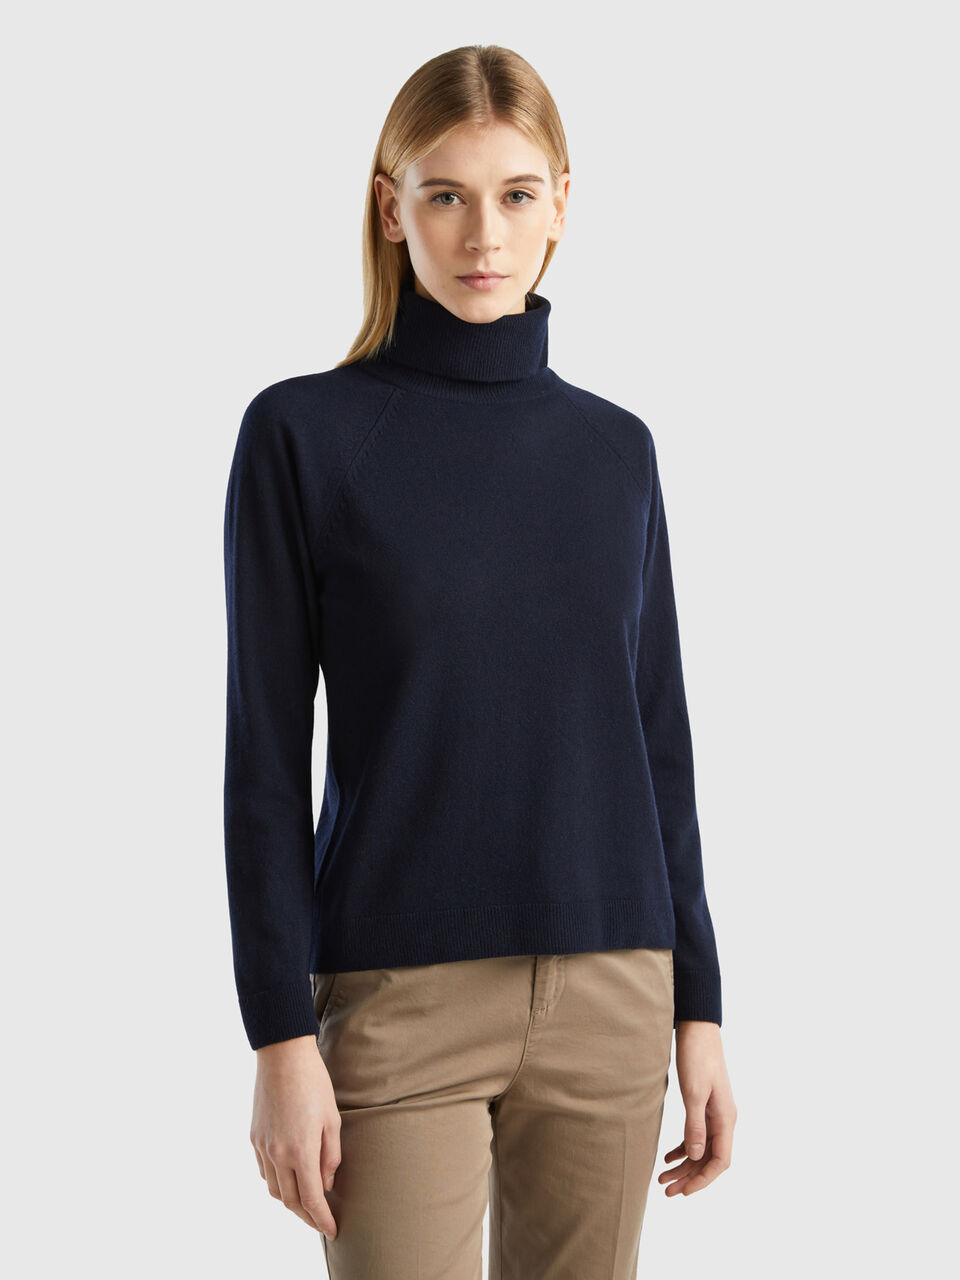 Dark blue turtleneck sweater in cashmere and wool blend - Dark Blue ...